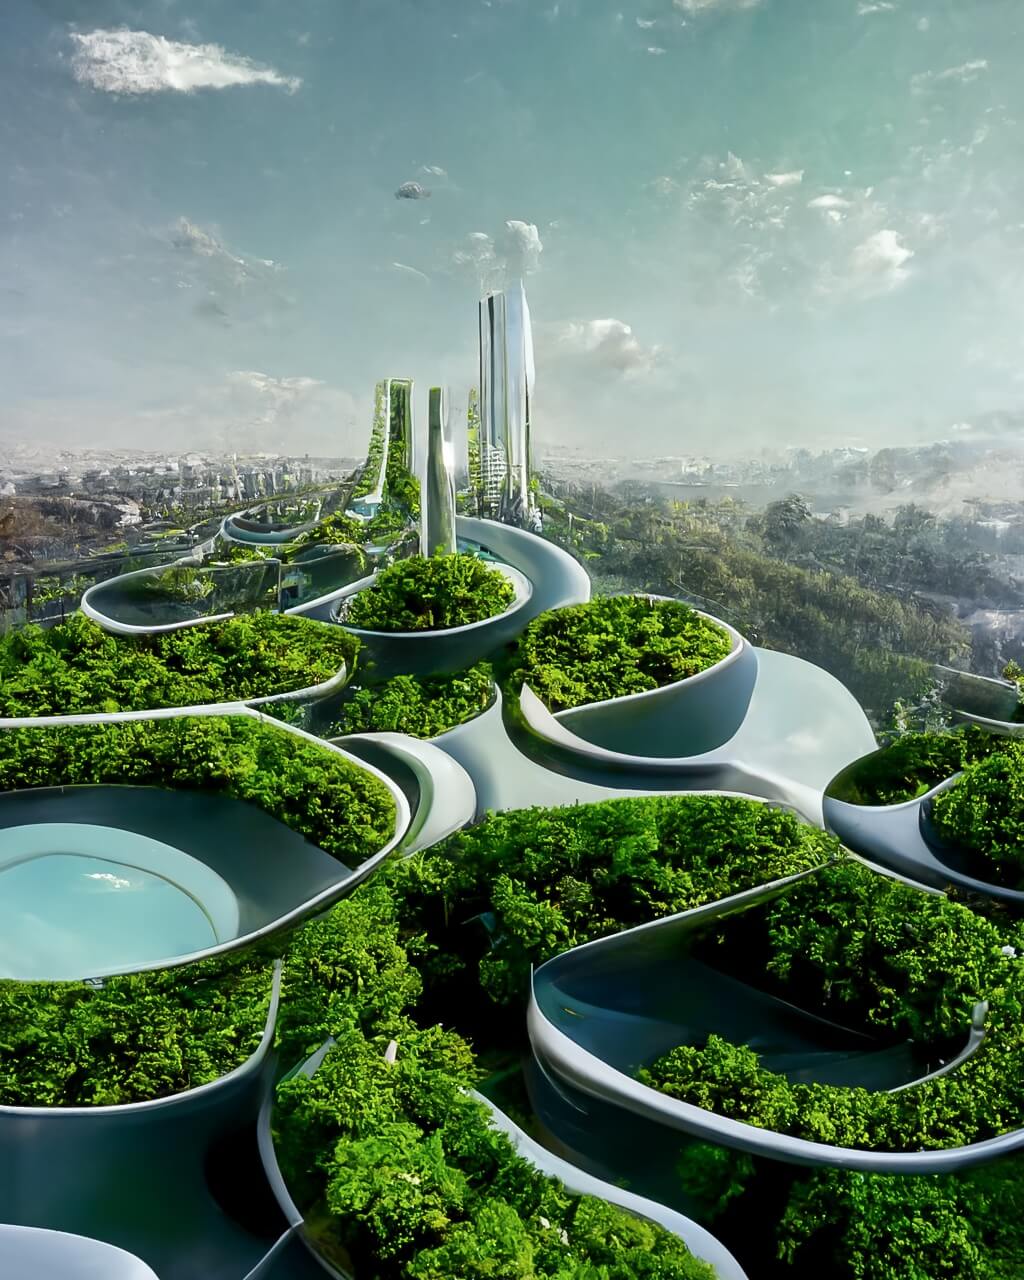 FUTURISTIC CITIES FUTURE READY INDIA